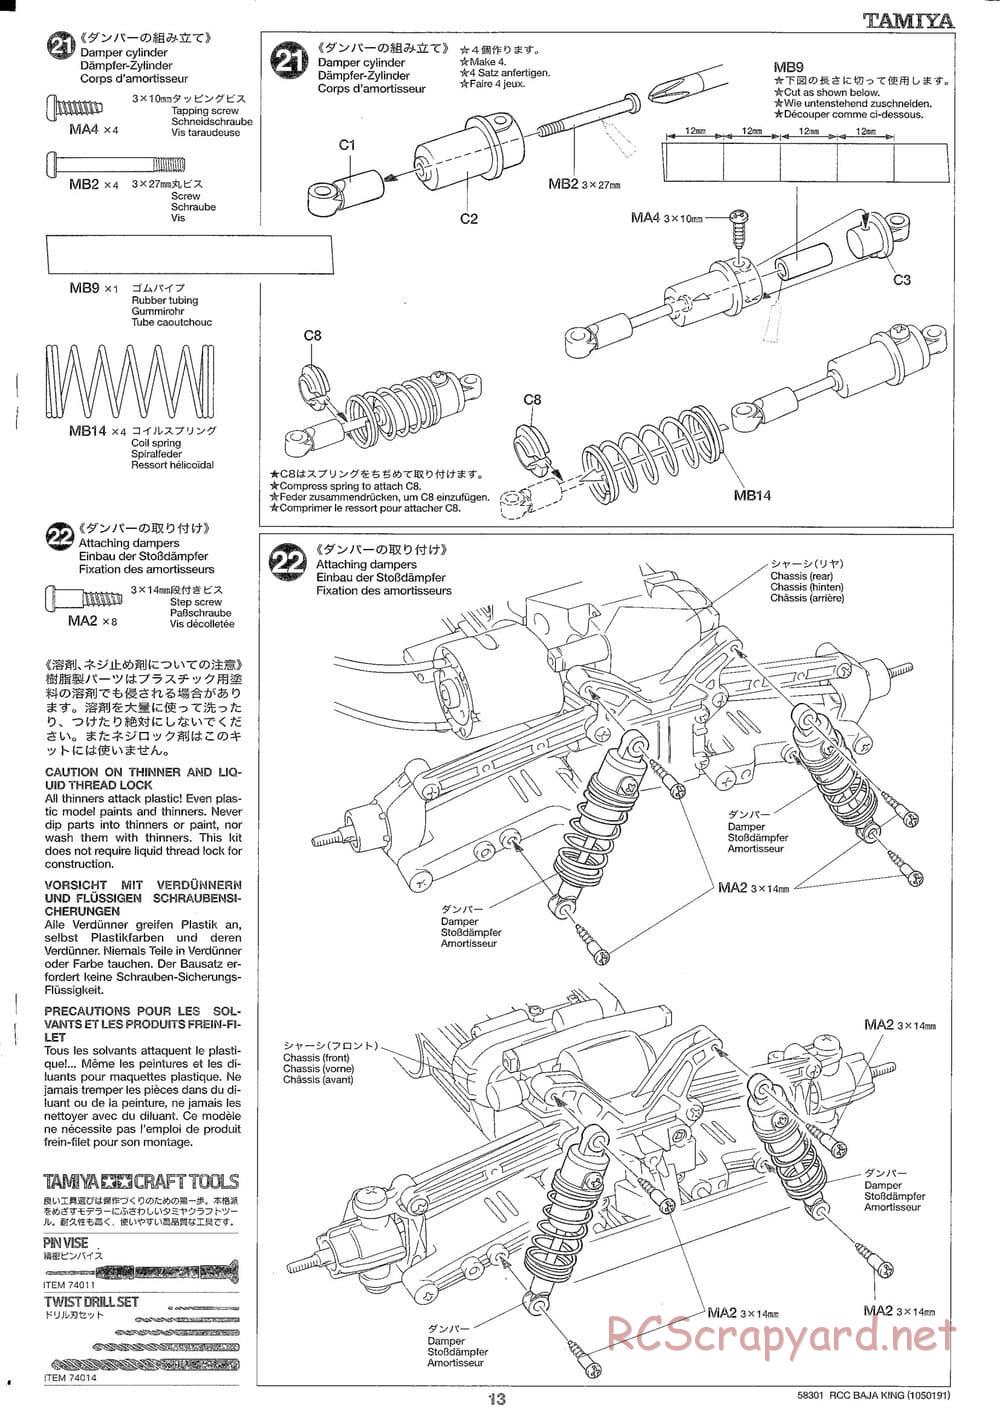 Tamiya - Baja King - TL-01B Chassis - Manual - Page 13